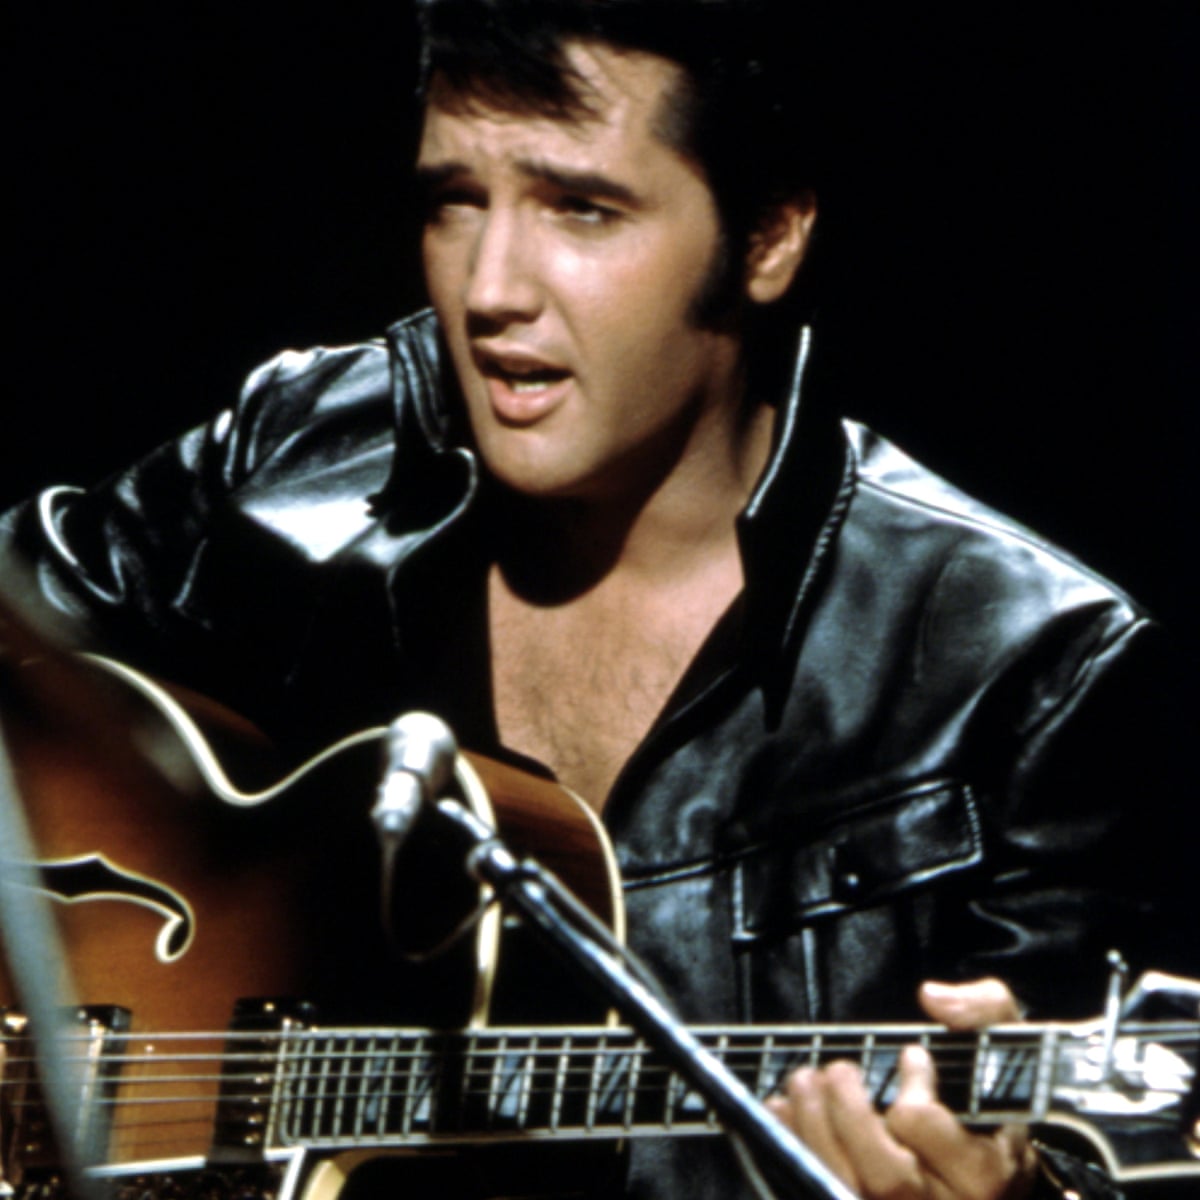 Bad genes, not rock'n'roll excess, killed Elvis Presley, claims biographer  | Elvis Presley | The Guardian